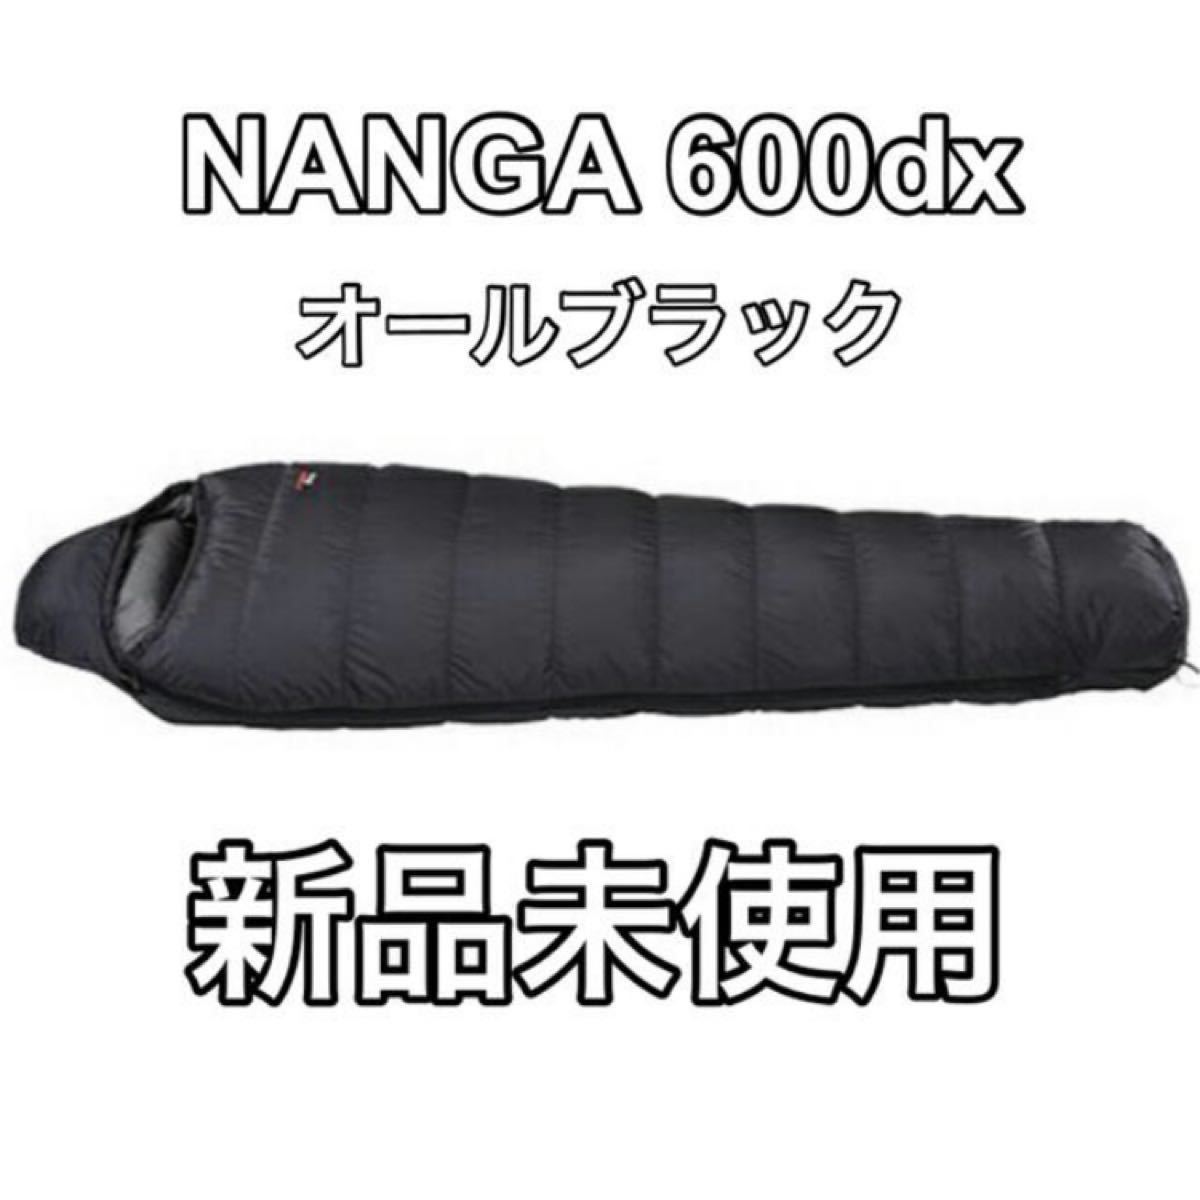 【新品未使用】ナンガ(NANGA) オーロラ 600DX オールブラック